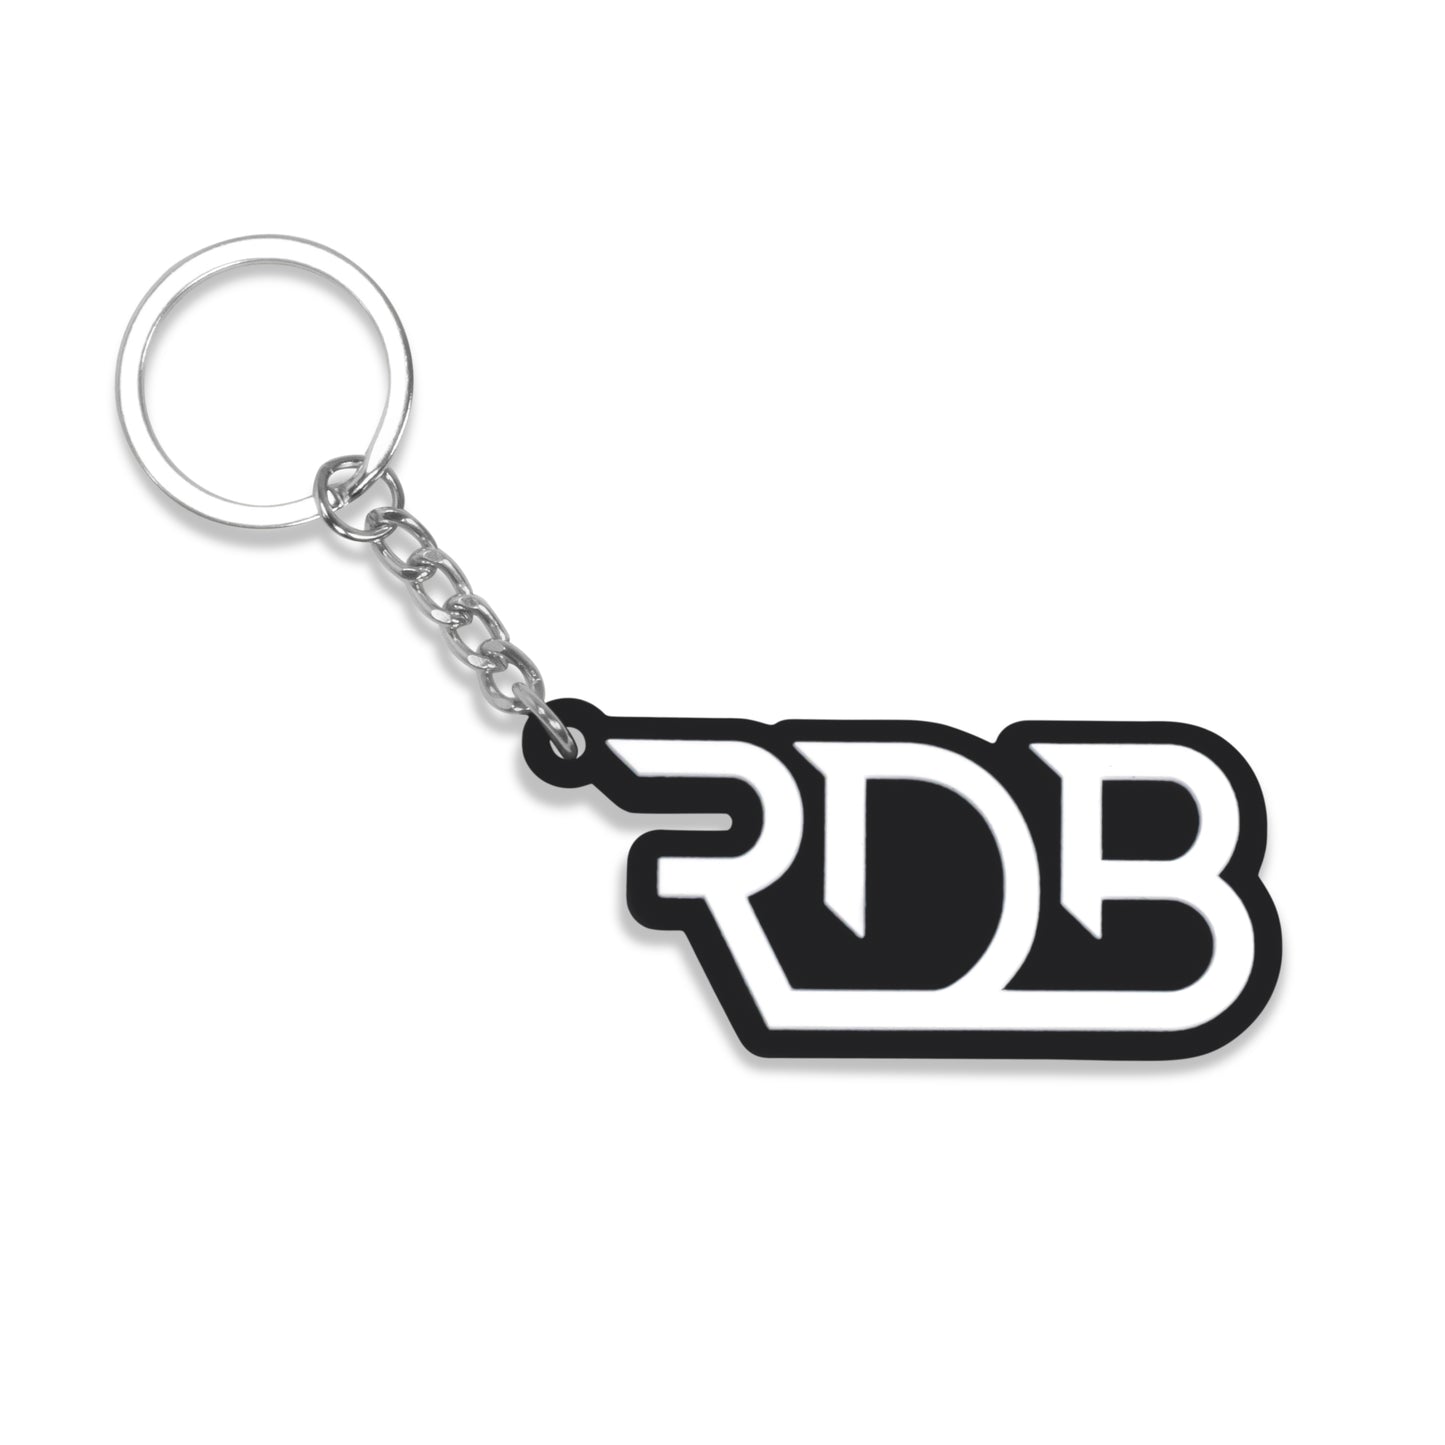 RDB Rubber Keychain